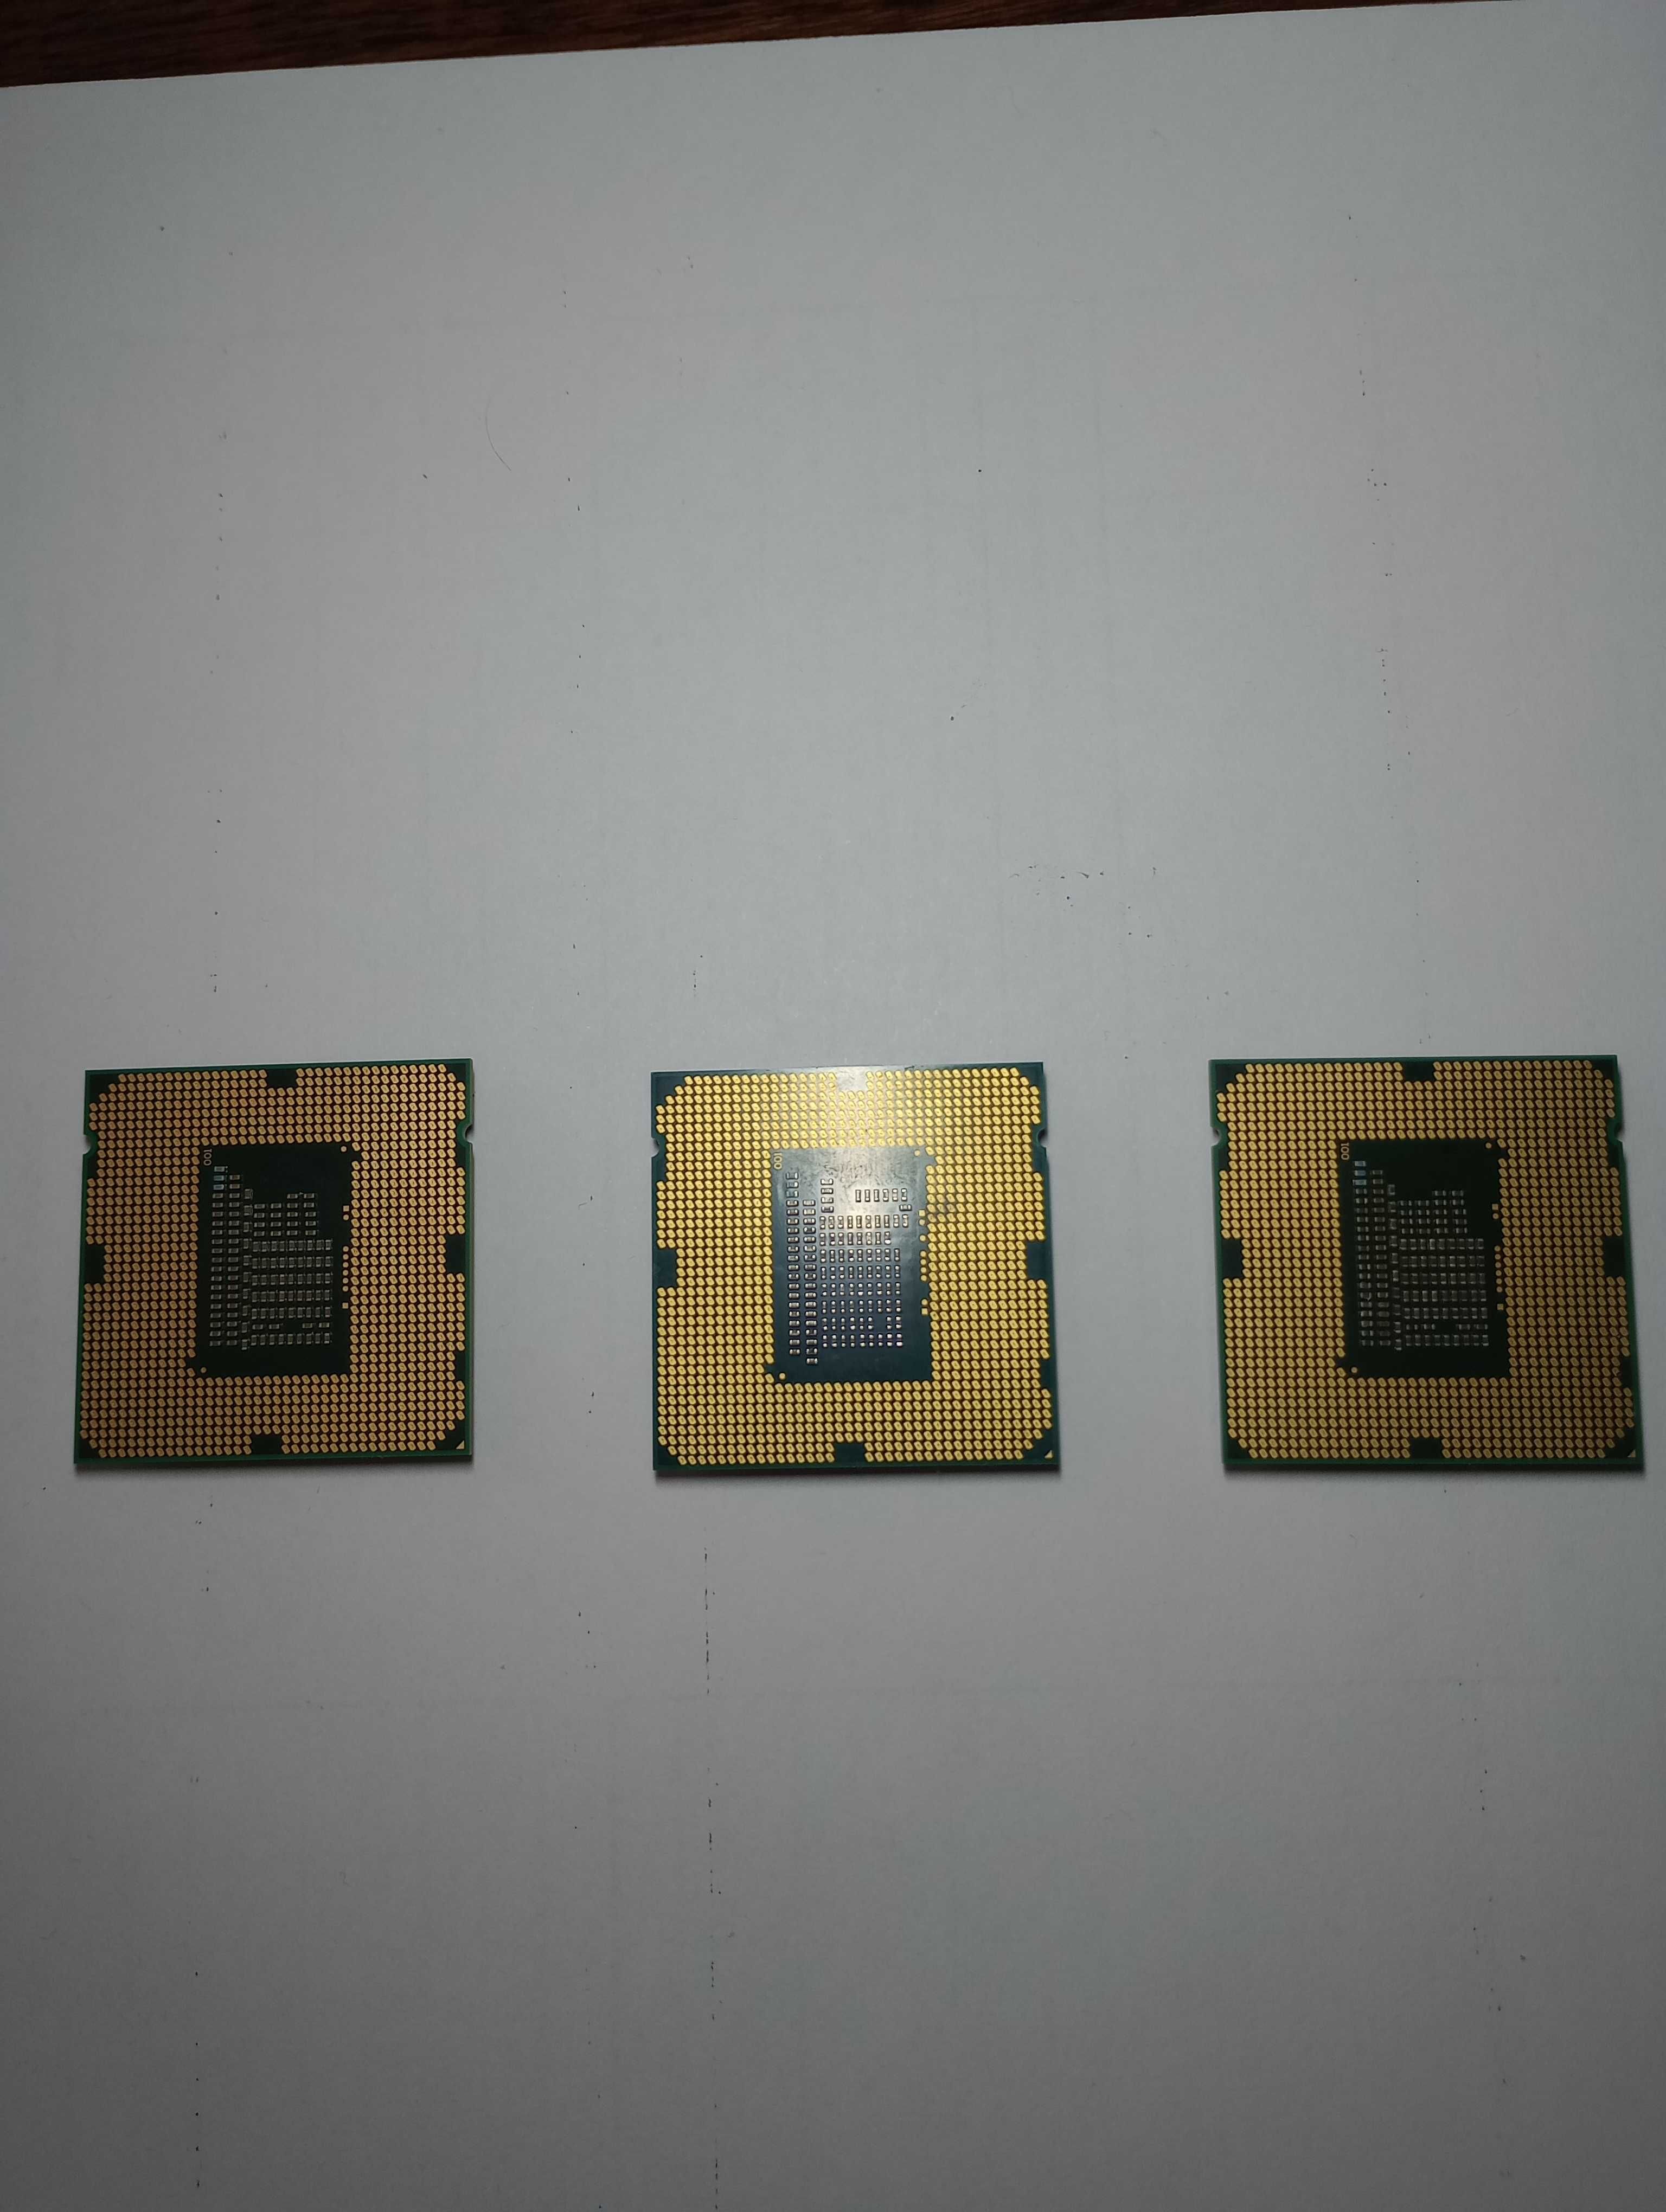 Intel Core i3-2120/Intel Pentium G2130/Intel Pentium G630